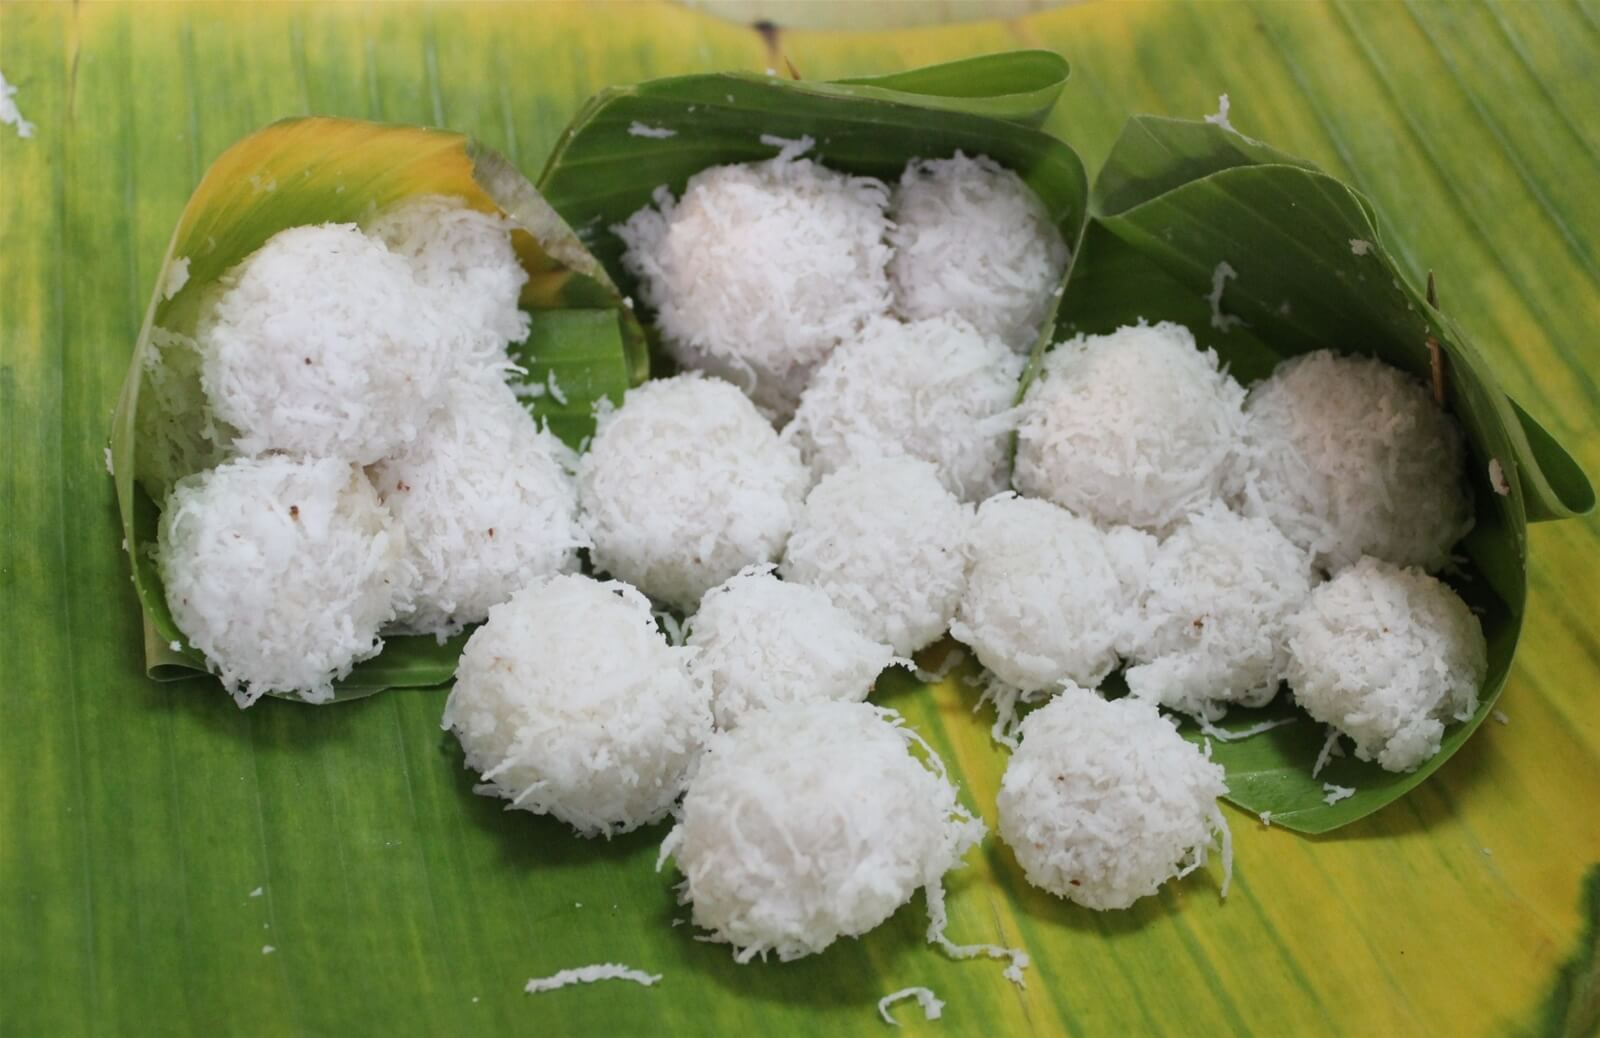 Những viên bánh gạo nhỏ, màu trắng màu cơm dừa thái sợi được đặt trên tấm lá chuối xanh